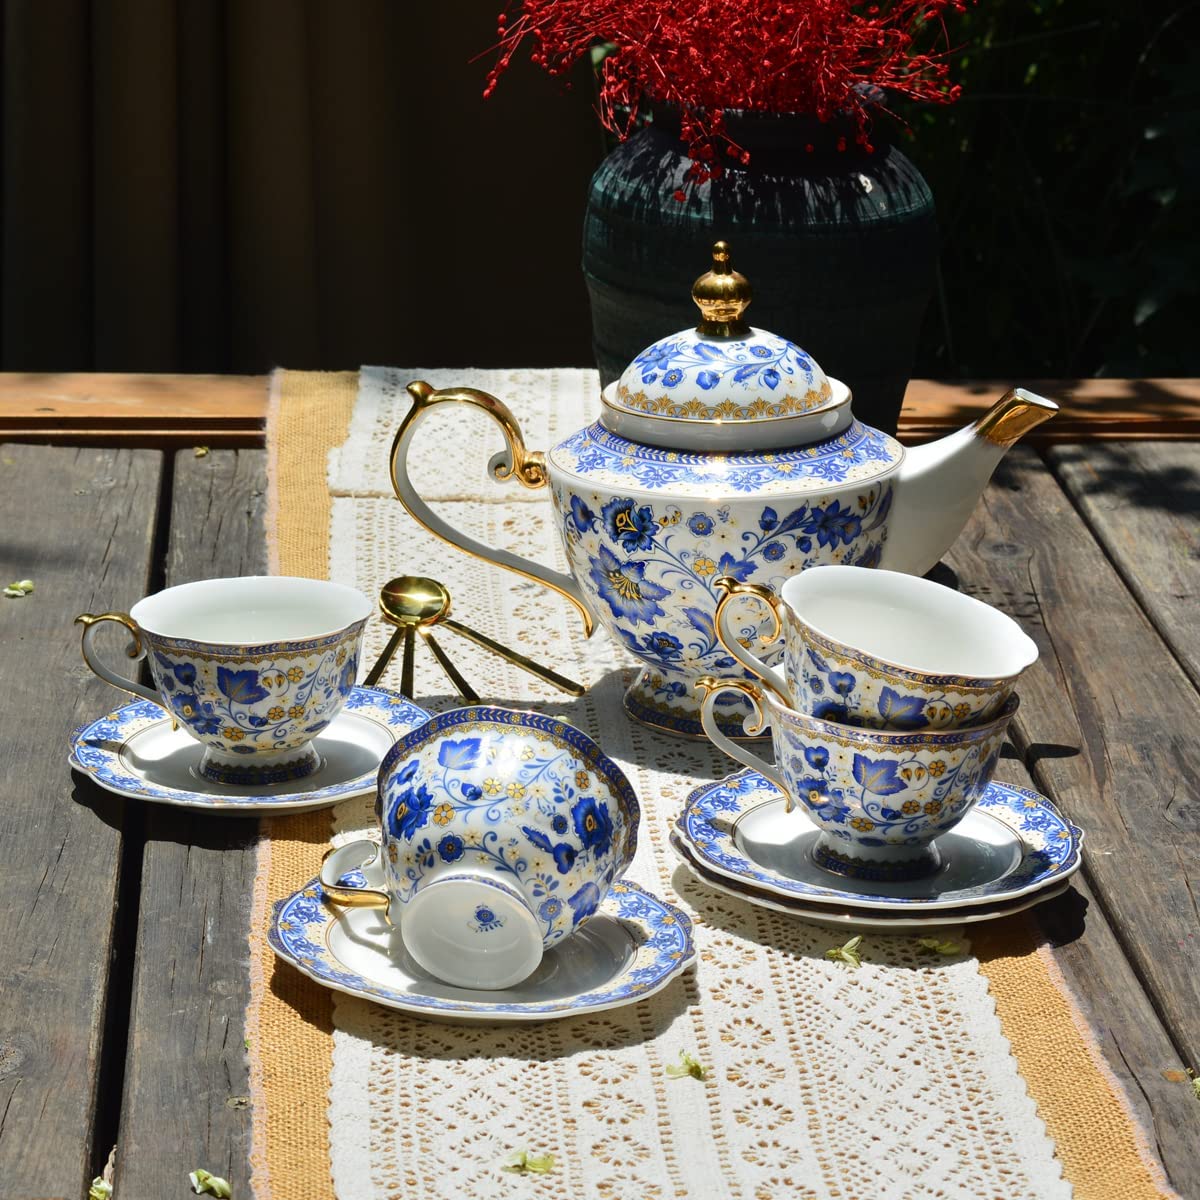 Red New Bone China Tea Set with Teapot & 4 Tea Cups